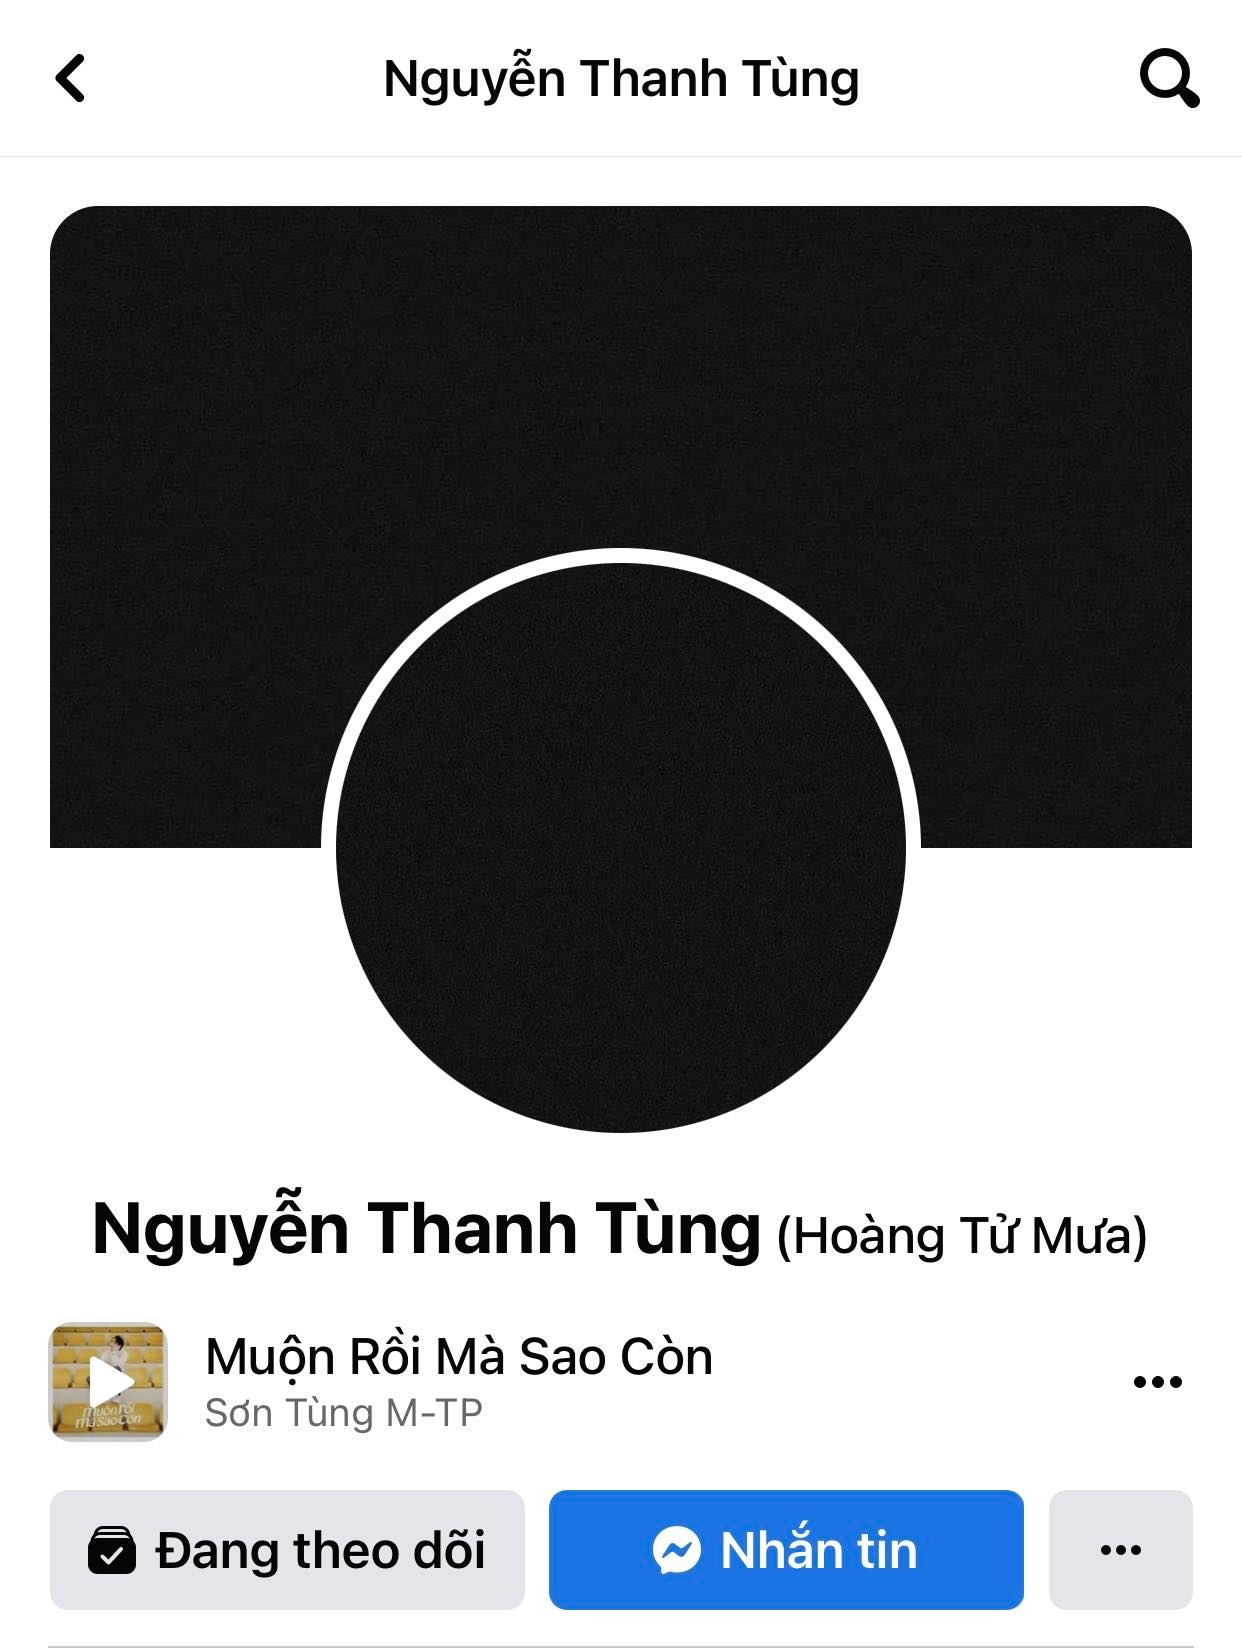 Sơn Tùng M-TP bất ngờ cập nhật loạt avatar đen trên Facebook khiến công chúng hoang mang, lo lắng